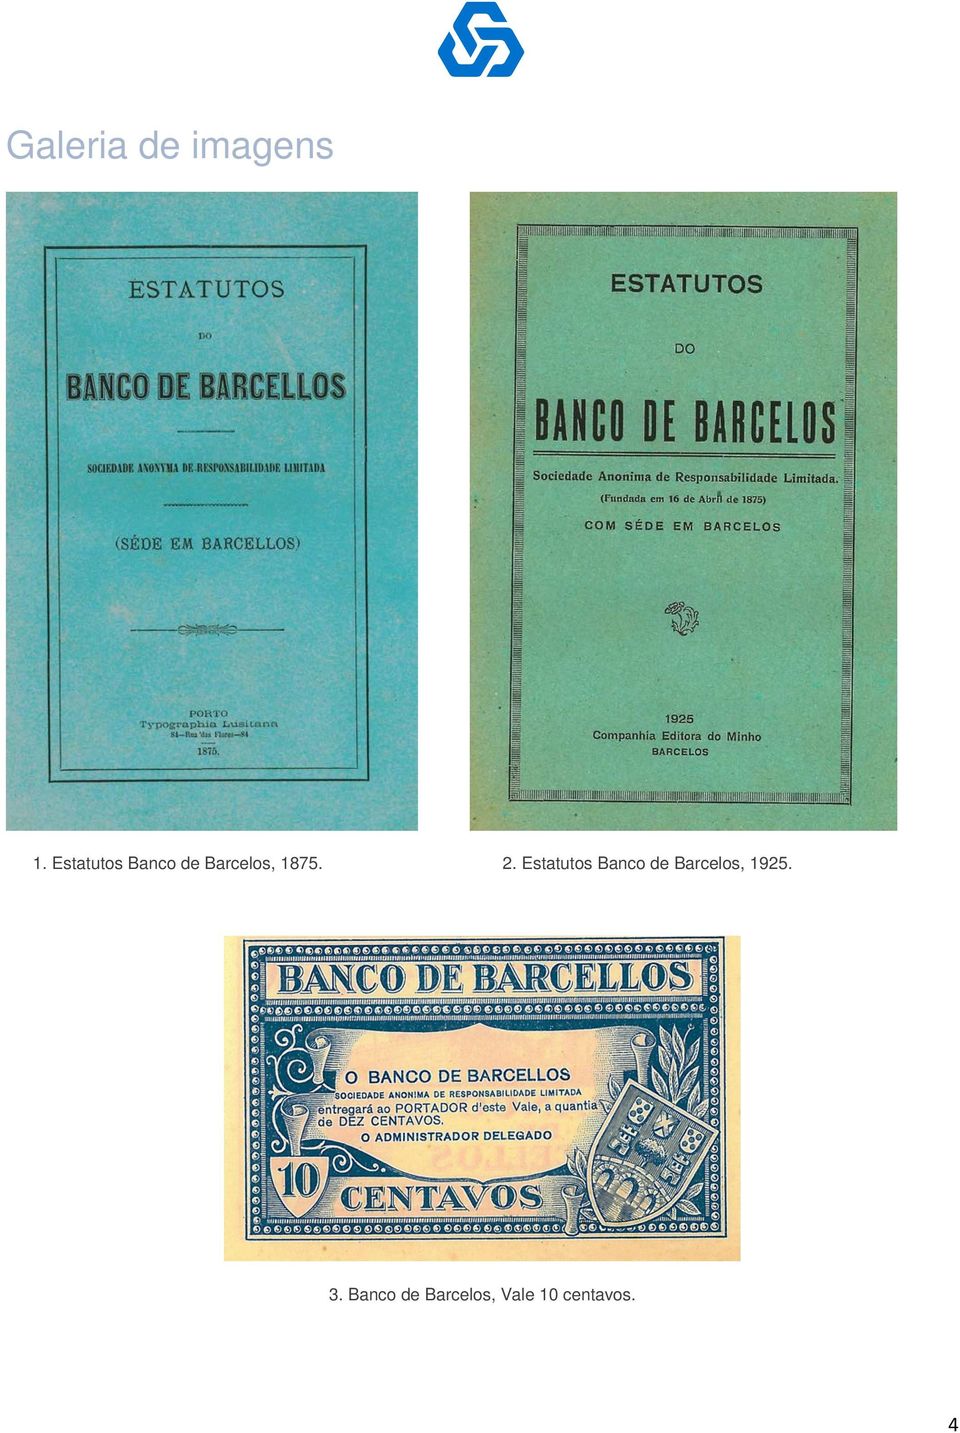 2. Estatutos Banco de Barcelos,